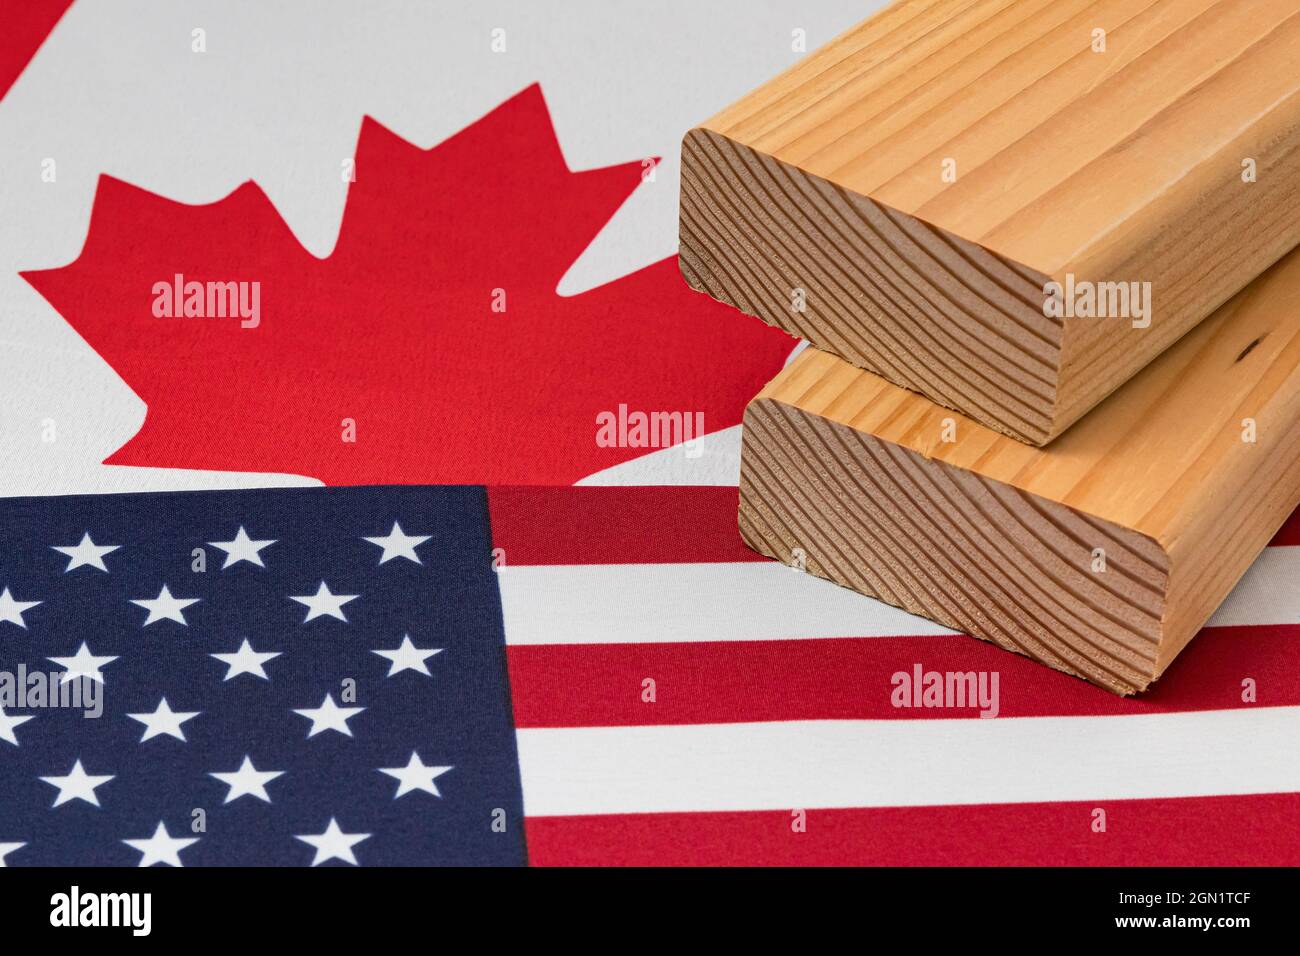 Weichholz Bauholz unter der Flagge von Kanada und den Vereinigten Staaten von Amerika. Handelskrieg, Zölle, fairer Handel und Holz, Holzwirtschaft Konzept Stockfoto